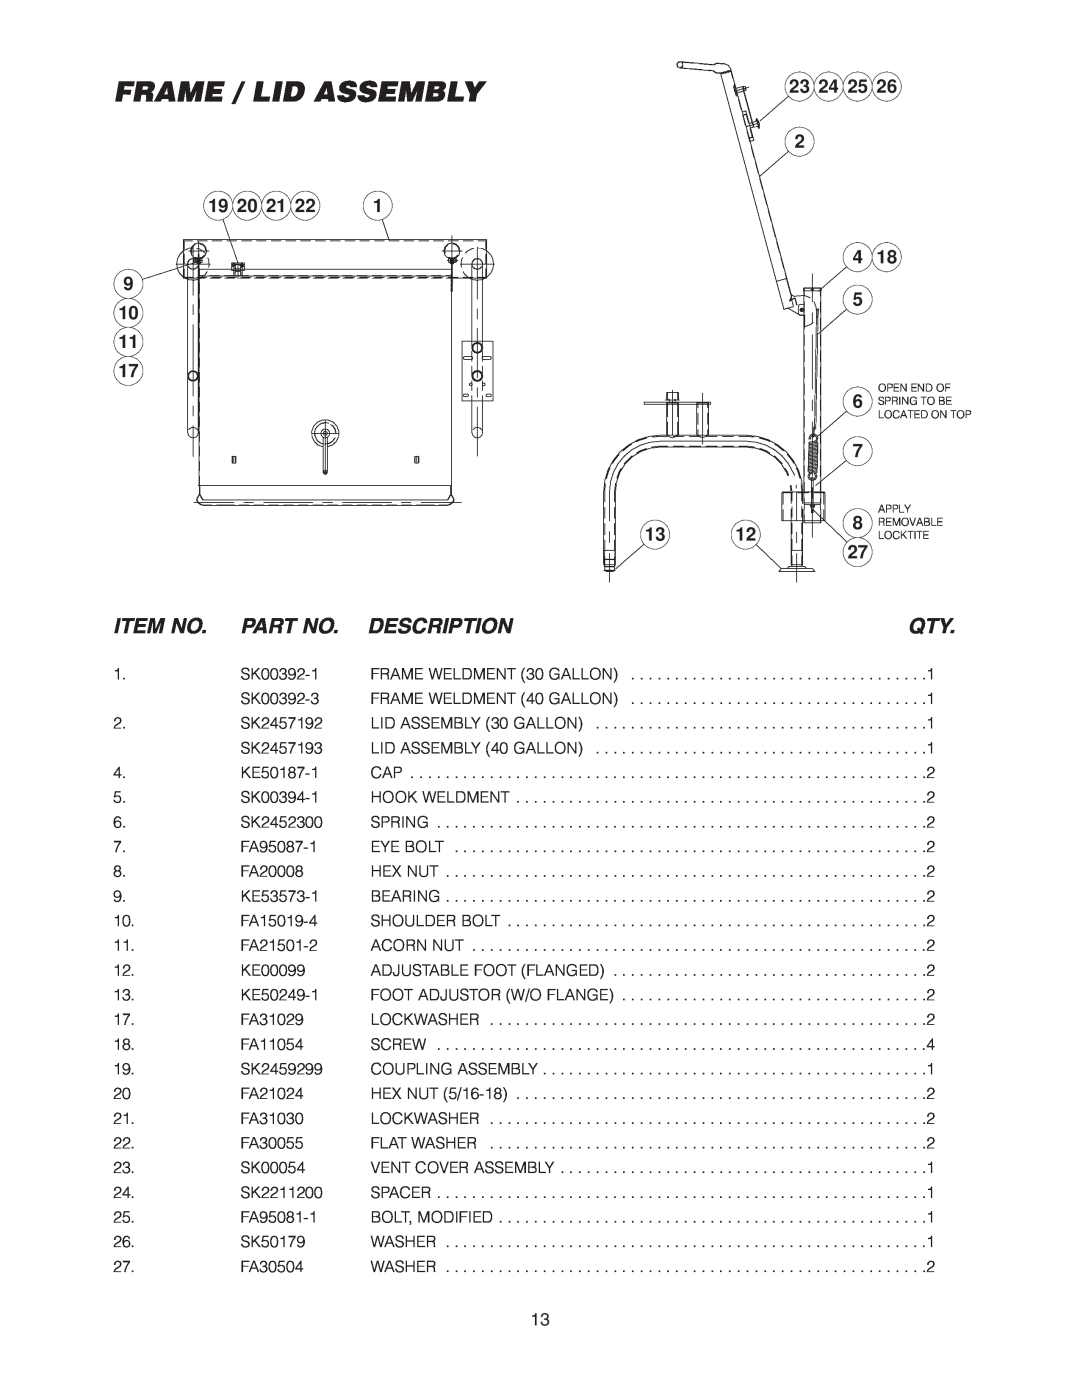 Cleveland Range SEL-30-T1, SEL-40-T1 manual Frame / Lid Assembly, Item No, Description, 23 24 25, 19 20 